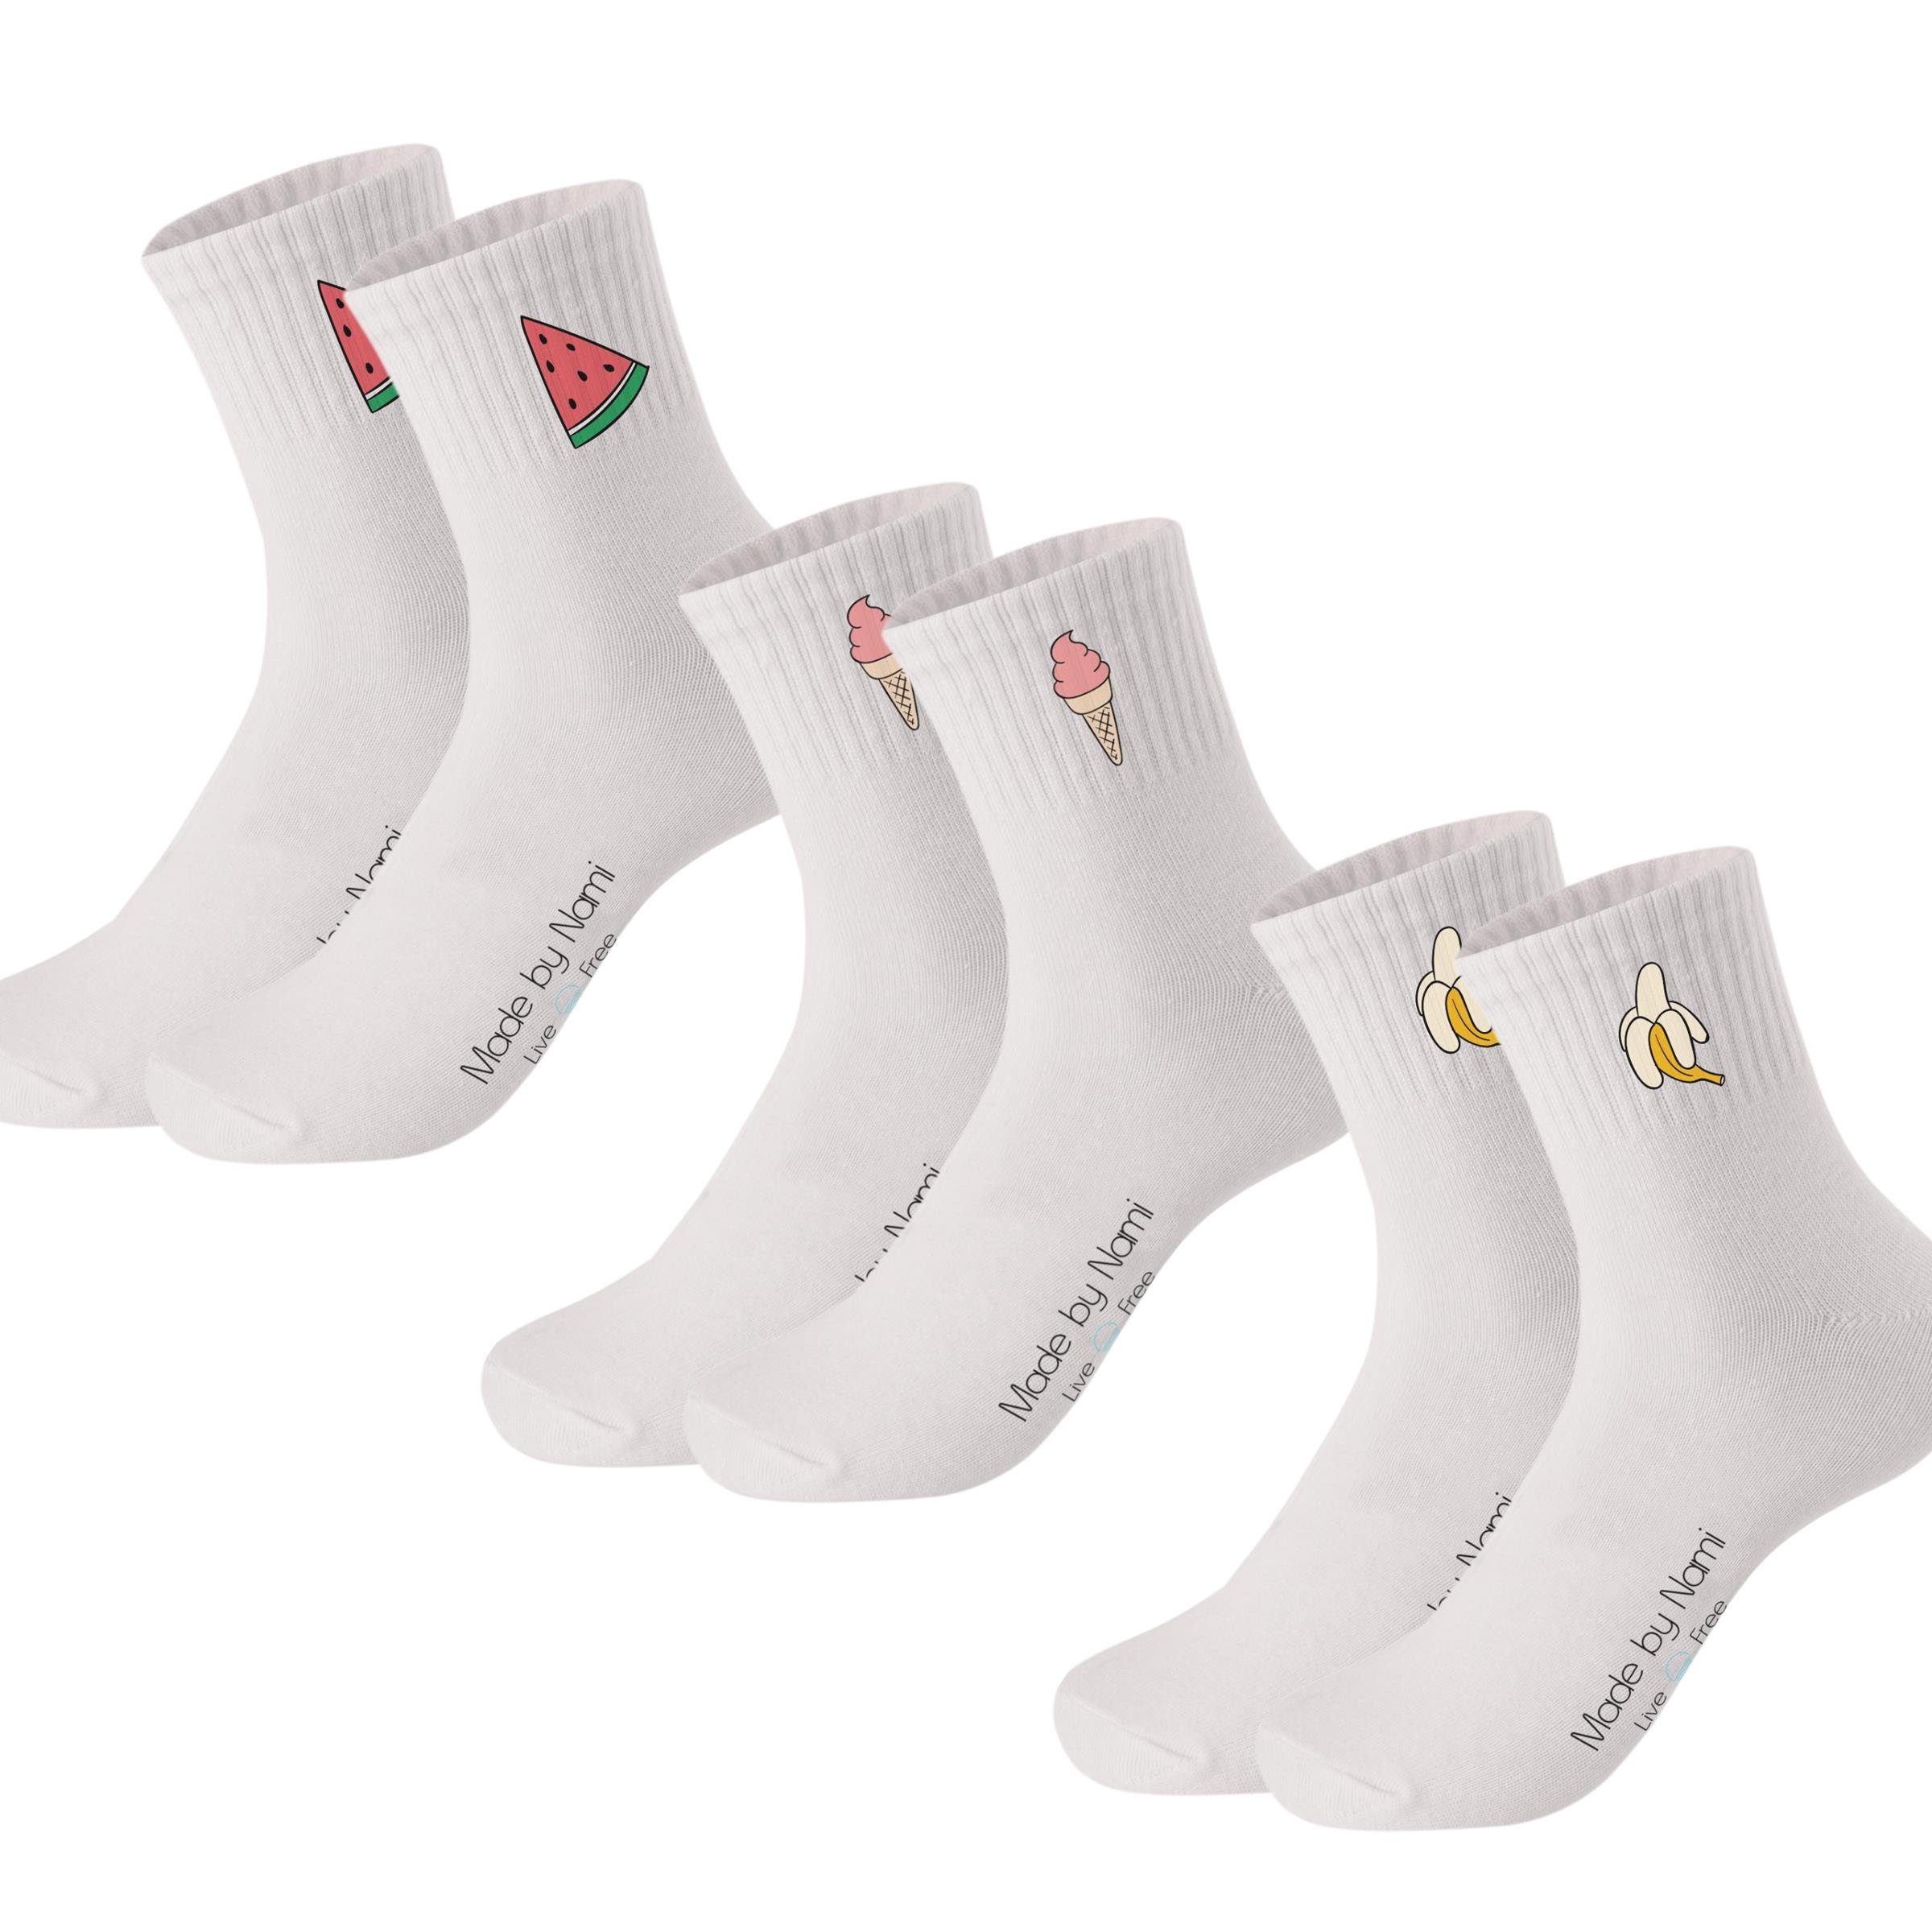 Made by Nami Socken Crew Socks Tennissocken weiß - Print - Baumwolle (3-Paar) 41-44, atmungsaktiv